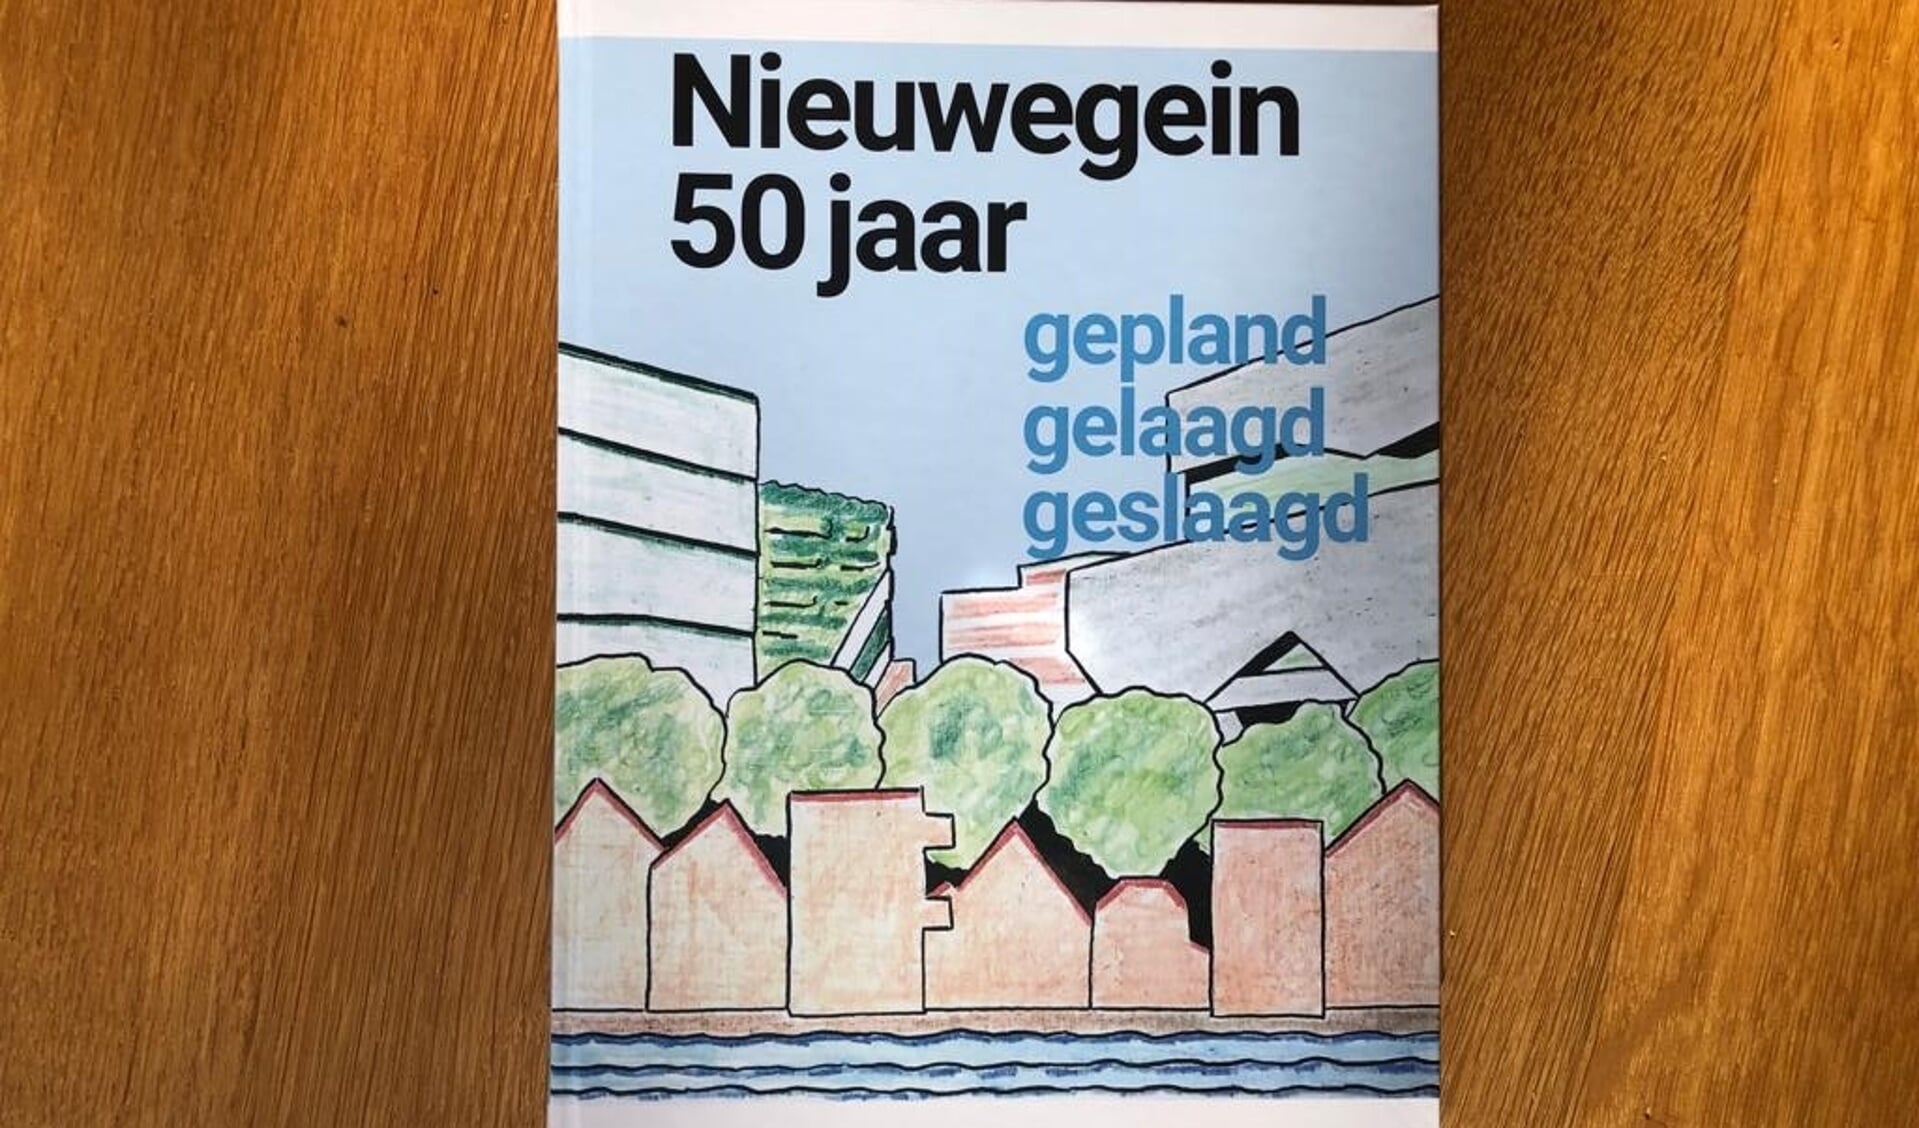 De omslag van het boek 'Nieuwegein 50 jaar', uitgebracht door De Historische Kring.